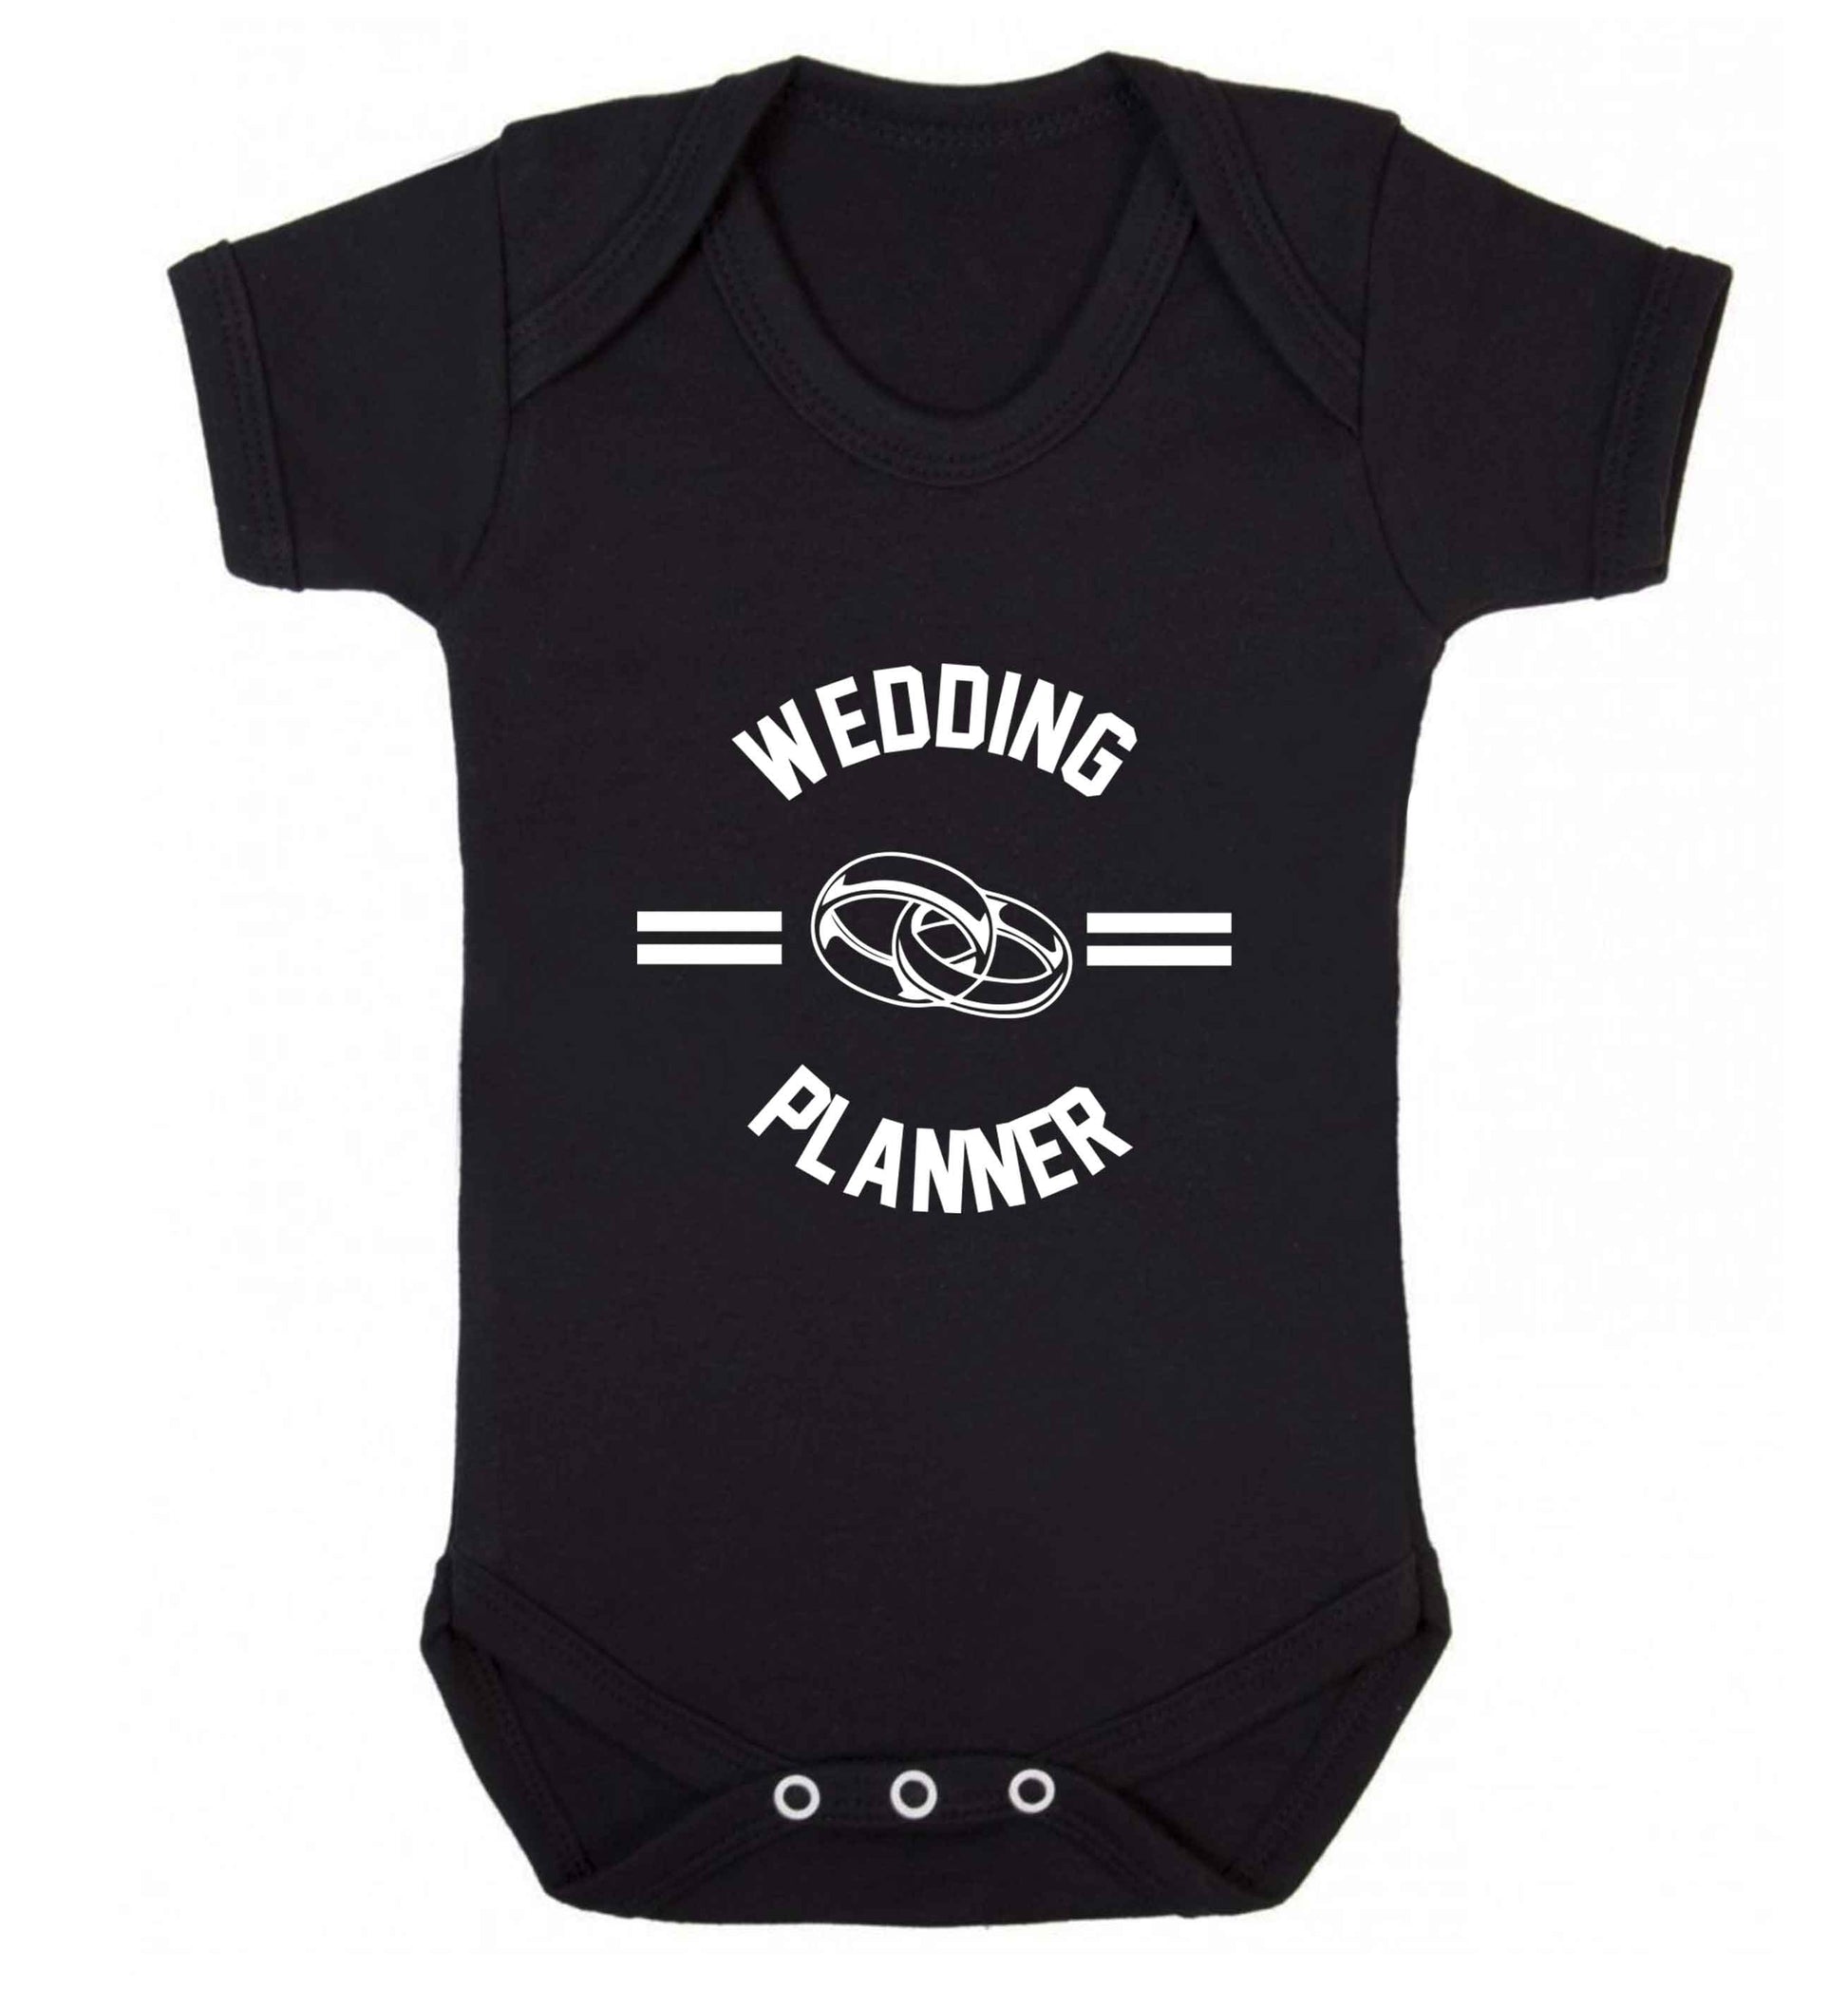 Wedding planner baby vest black 18-24 months